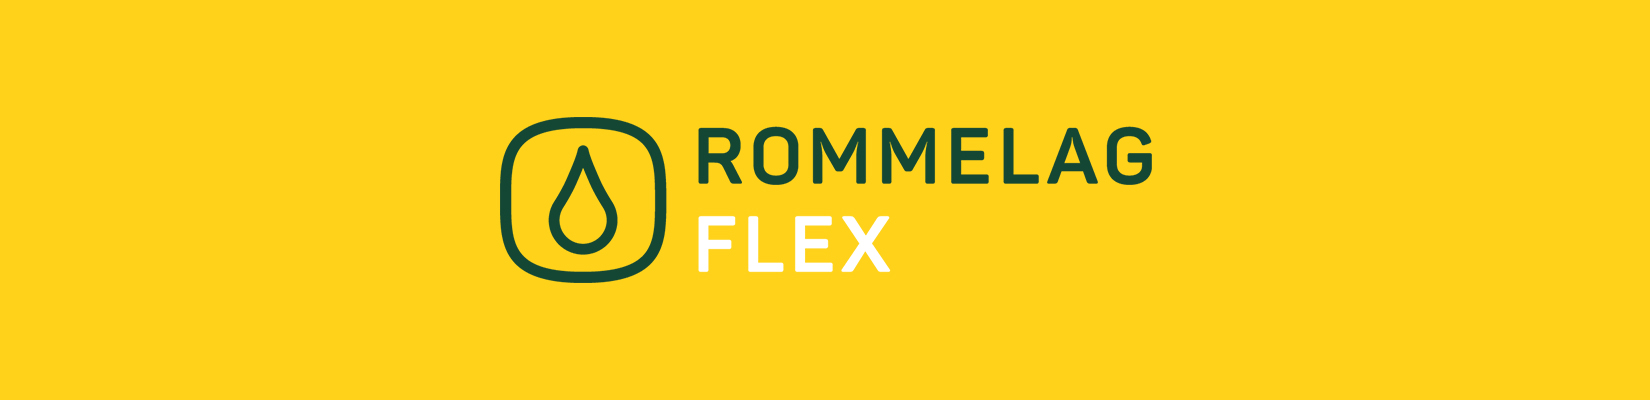 rommelag-flex